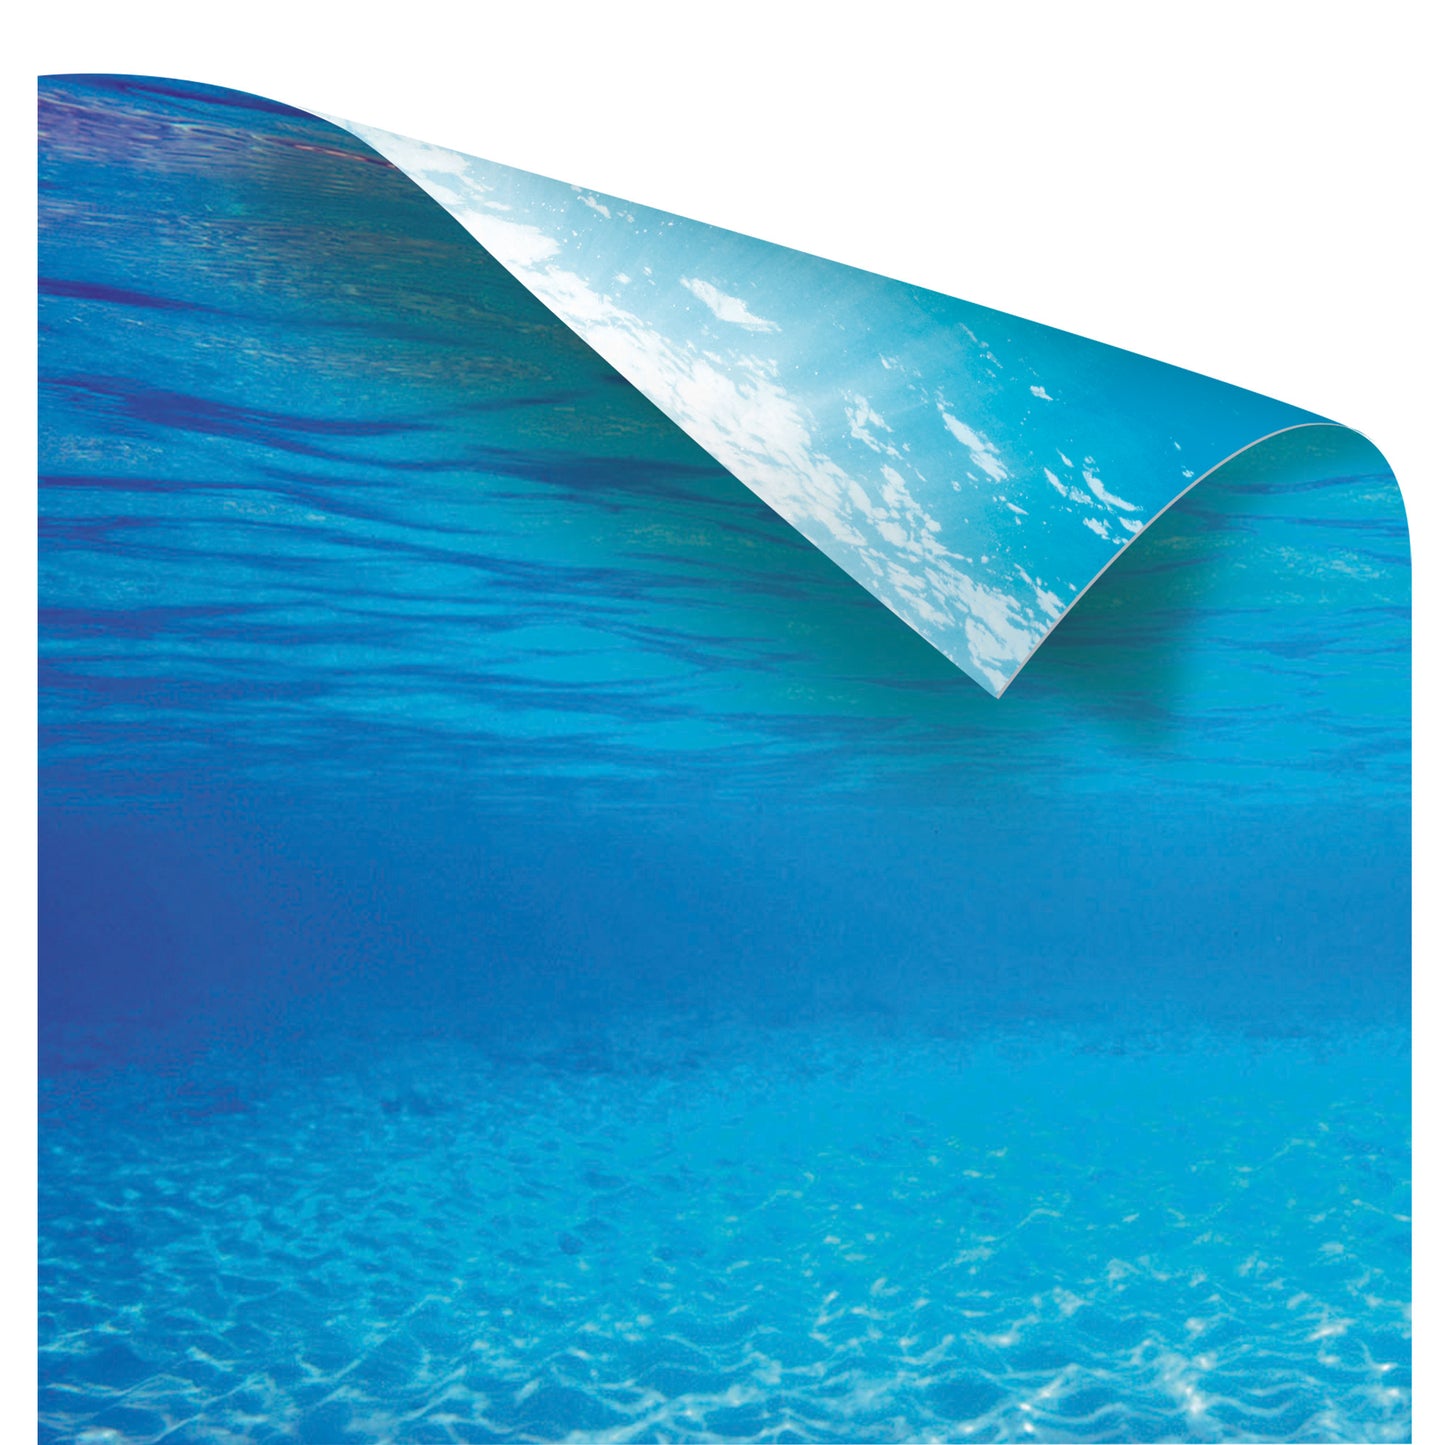 Juwel Poster 2 Ocean